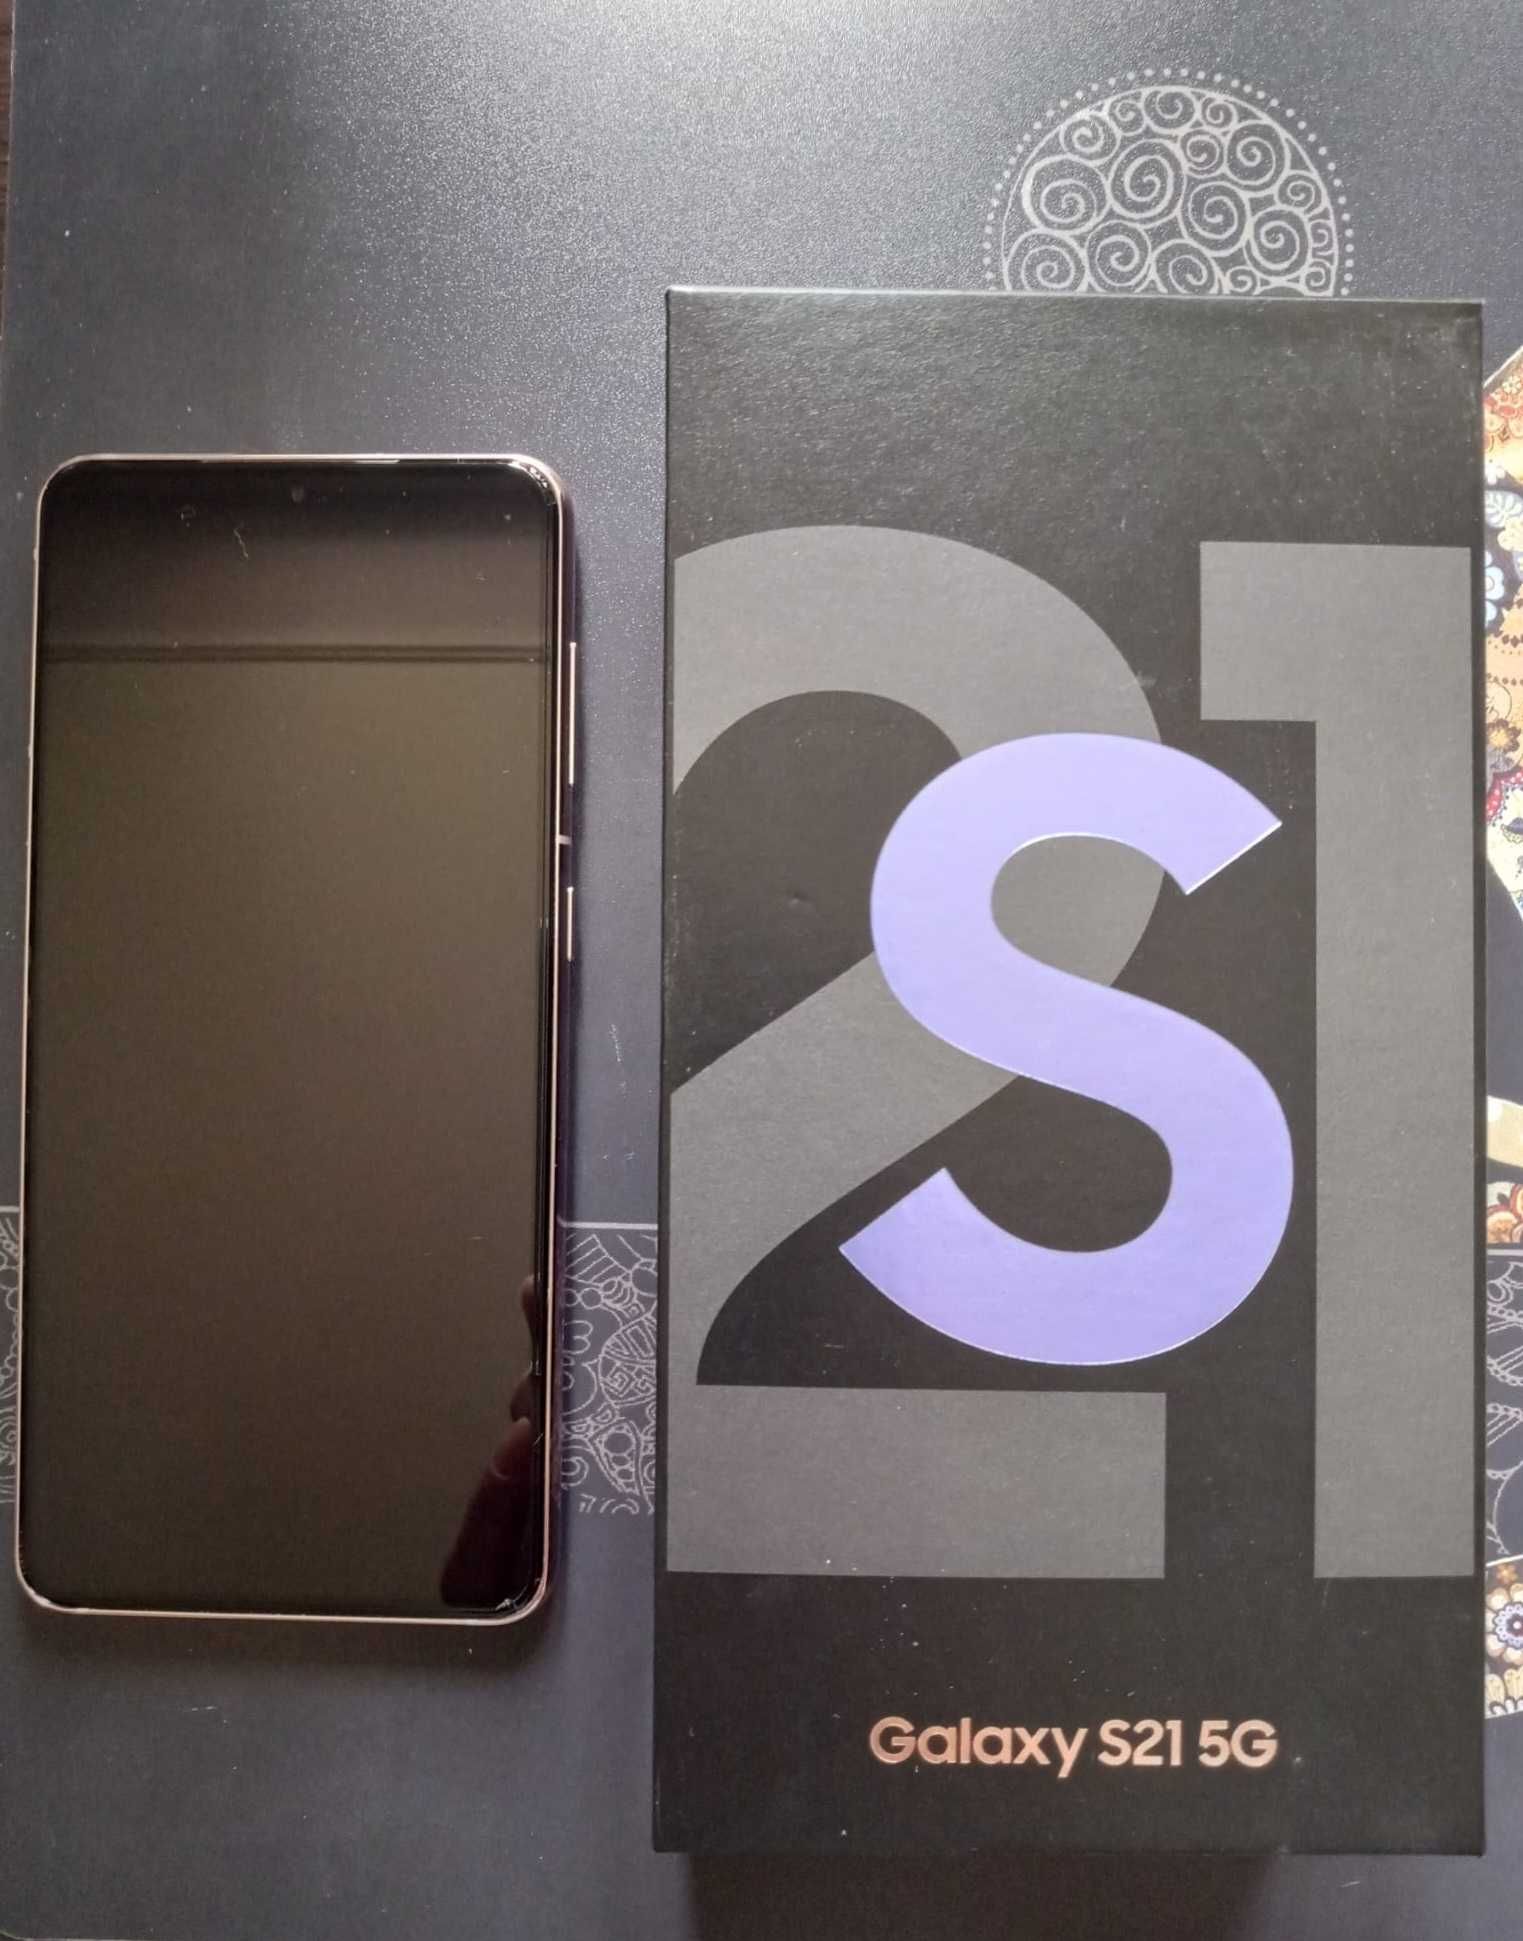 Samsung Galaxy S21 G5